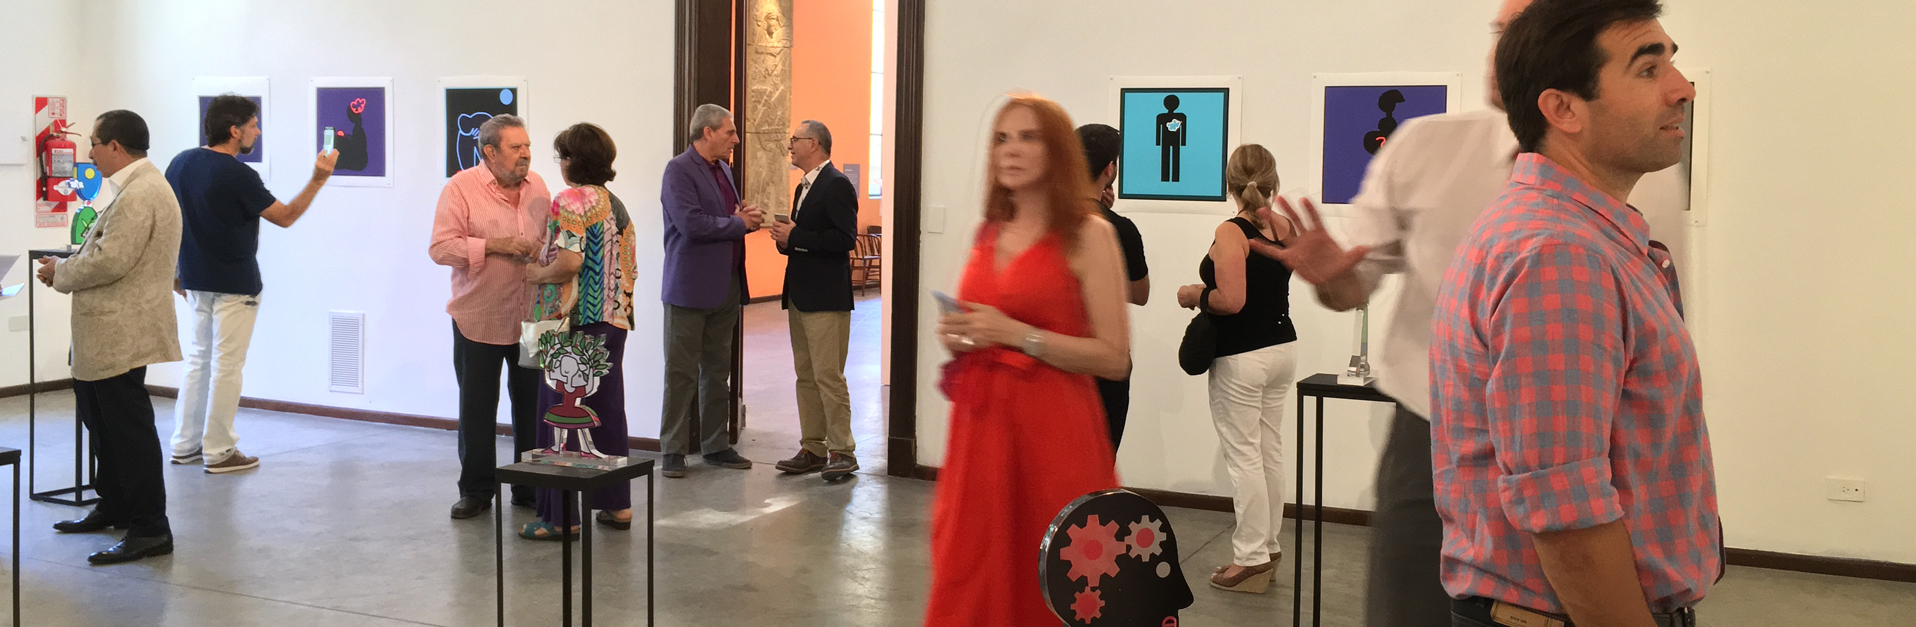 Inauguración de la exposición "Signos y Símbolos" del artista colombiano Duván López